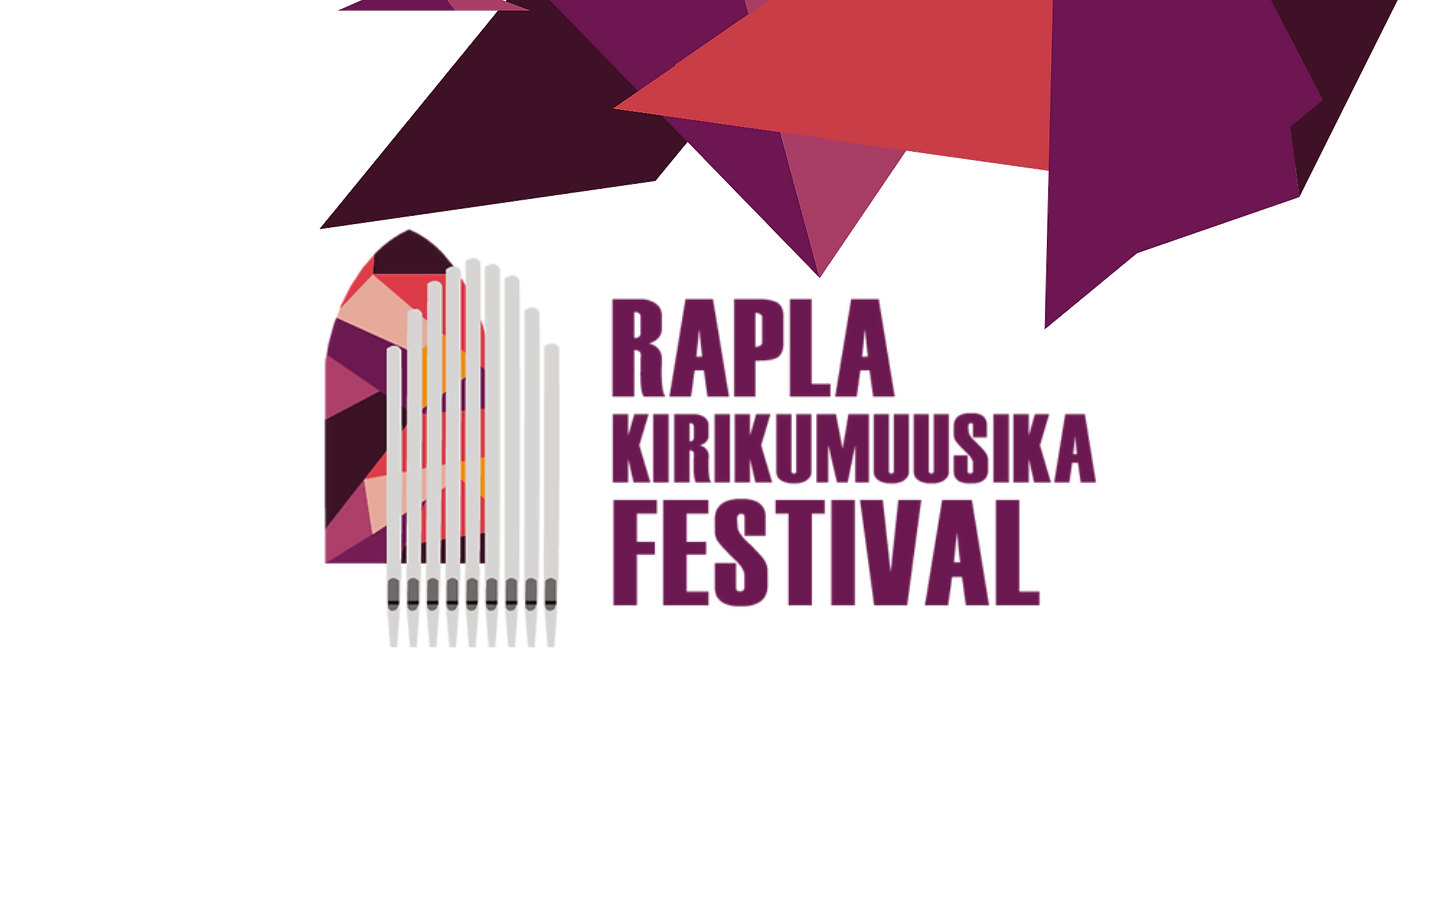 Algab tänavuaastane Rapla kirikumuusika festival